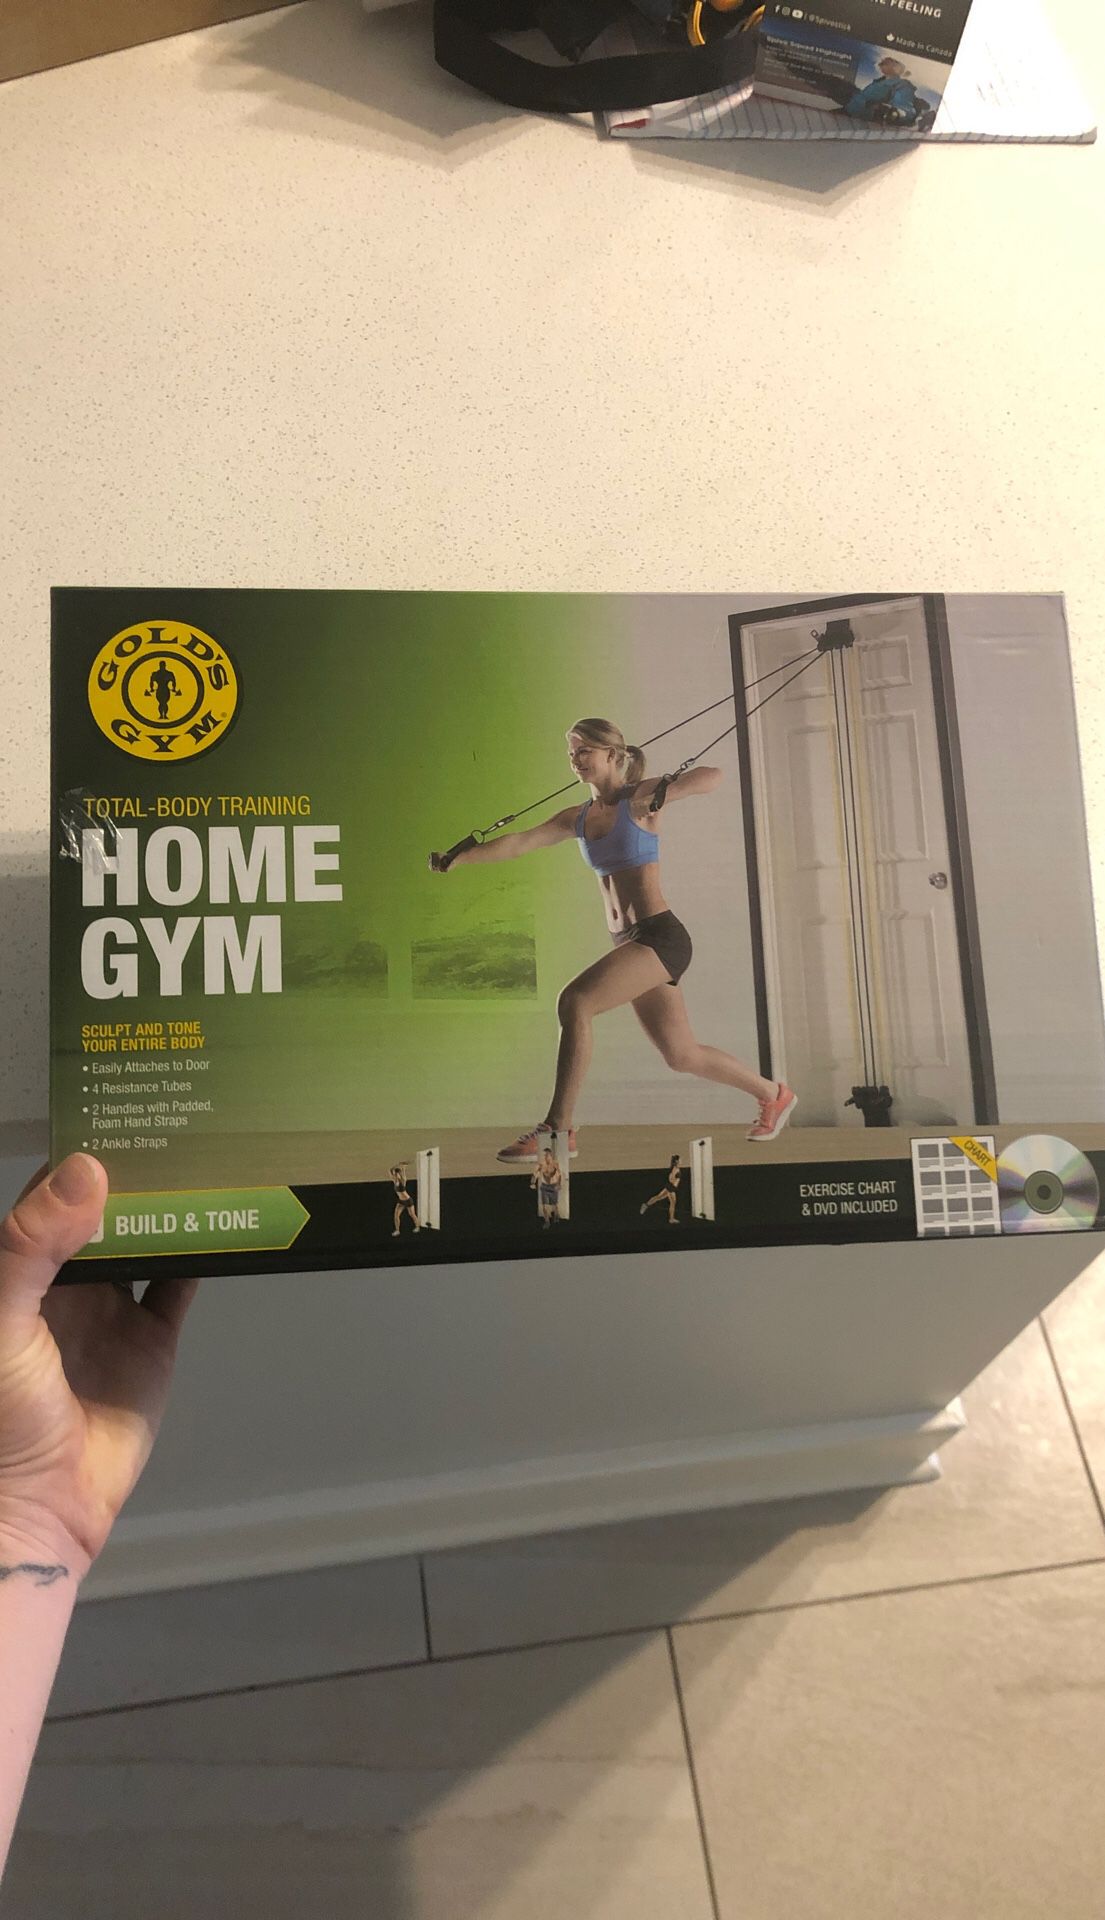 At home gym set